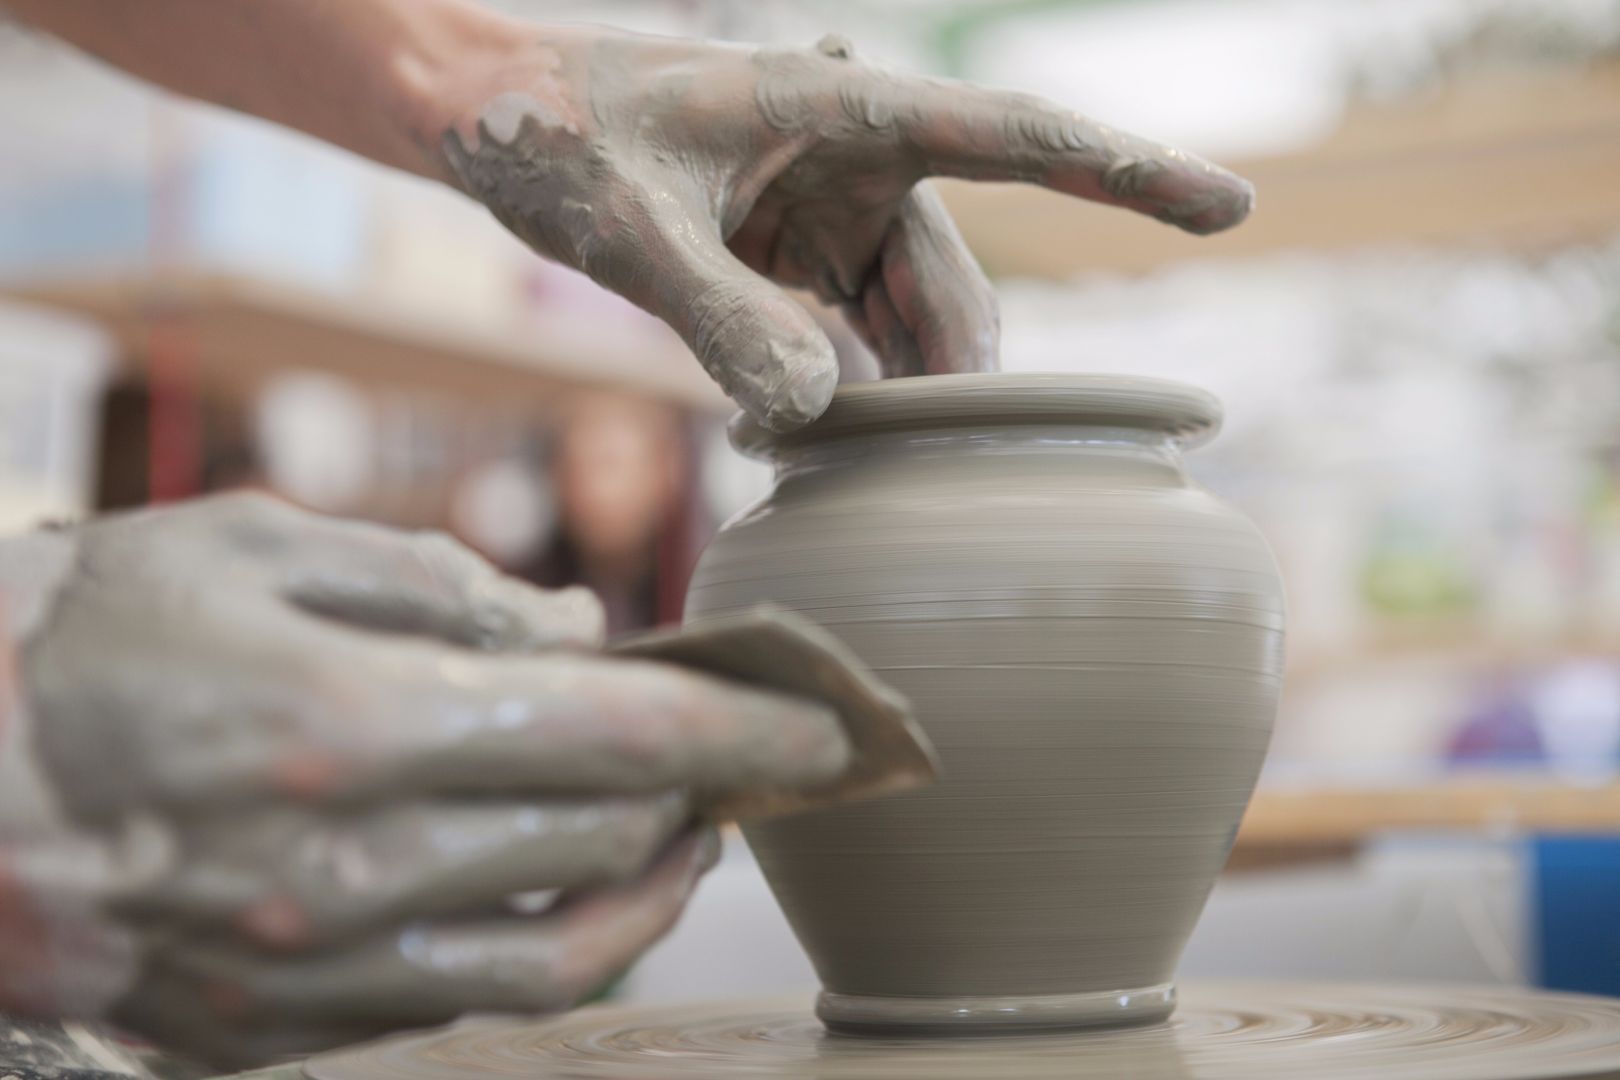 Poptávka na pokládku keramické dlažby na sucho (Keramika a porcelán) - Domažlice